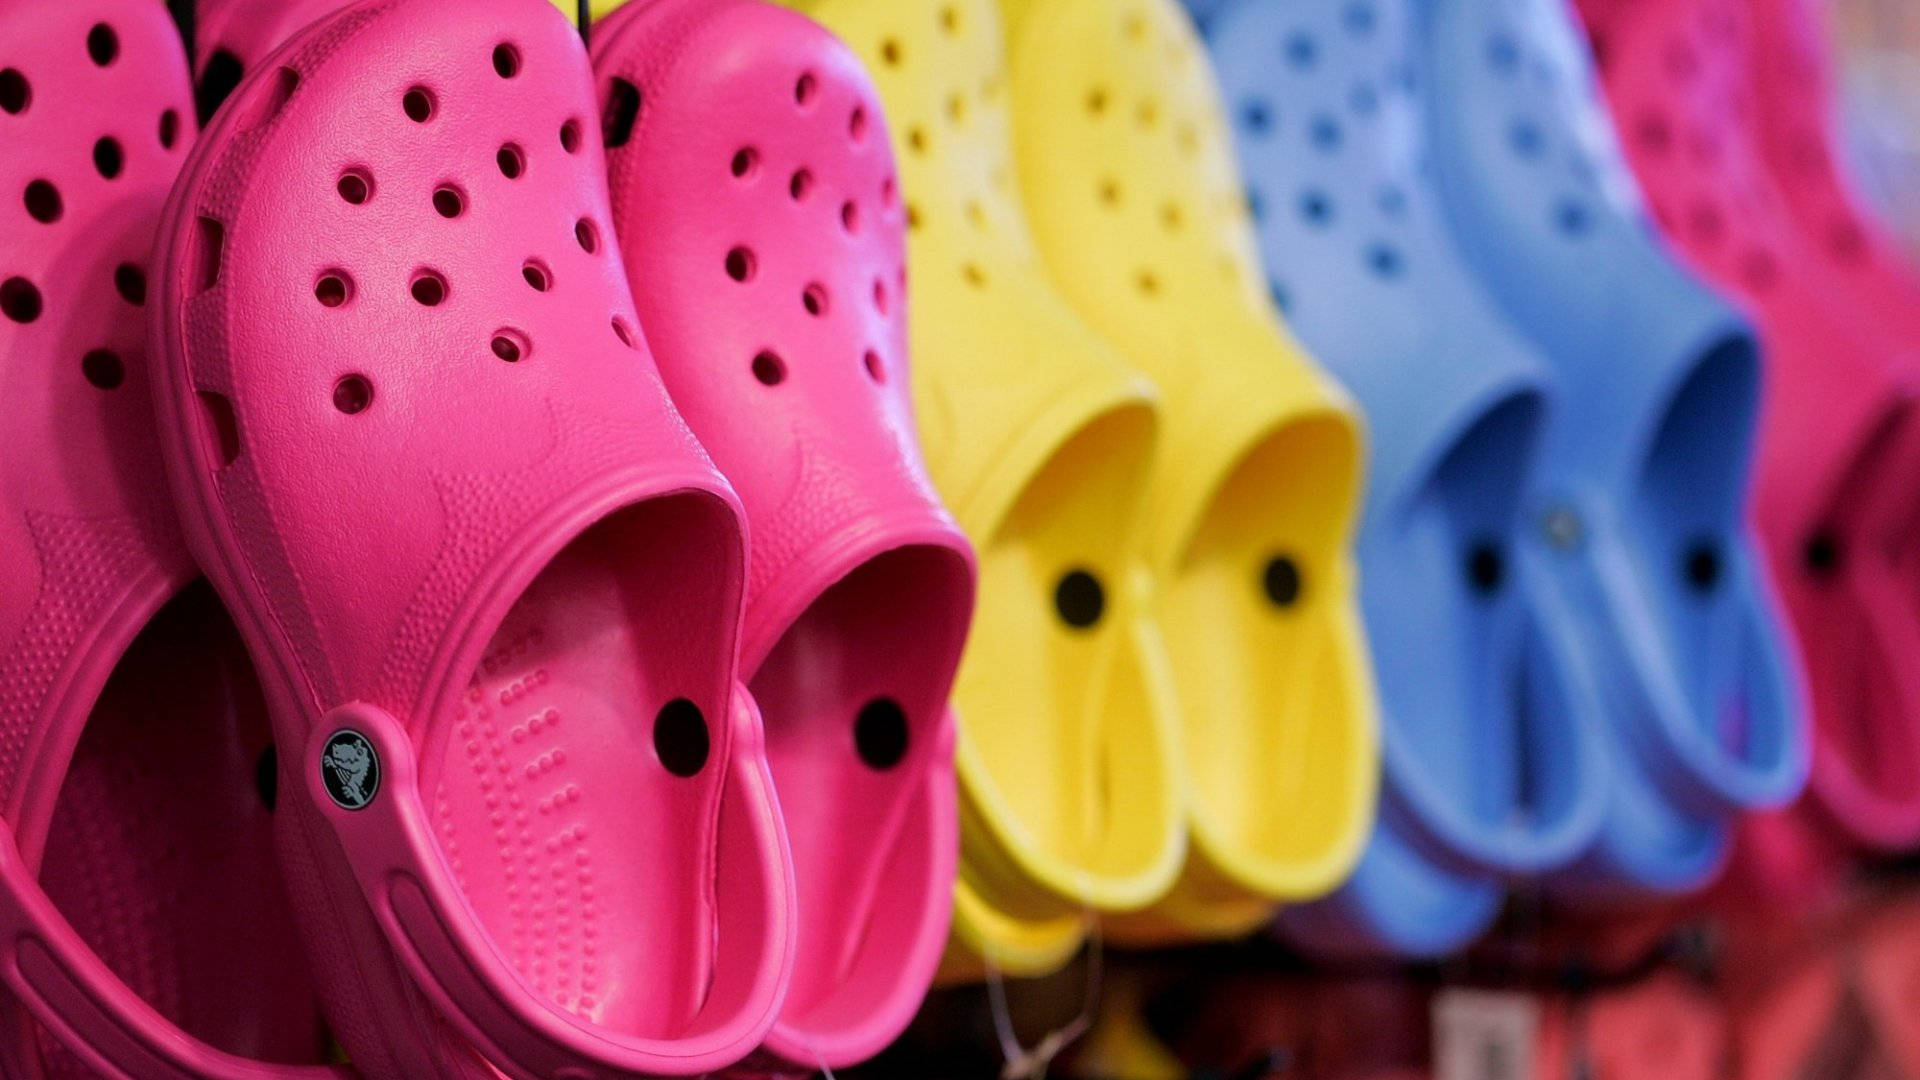 Colorful Array of Crocs Footwear on Display Wallpaper